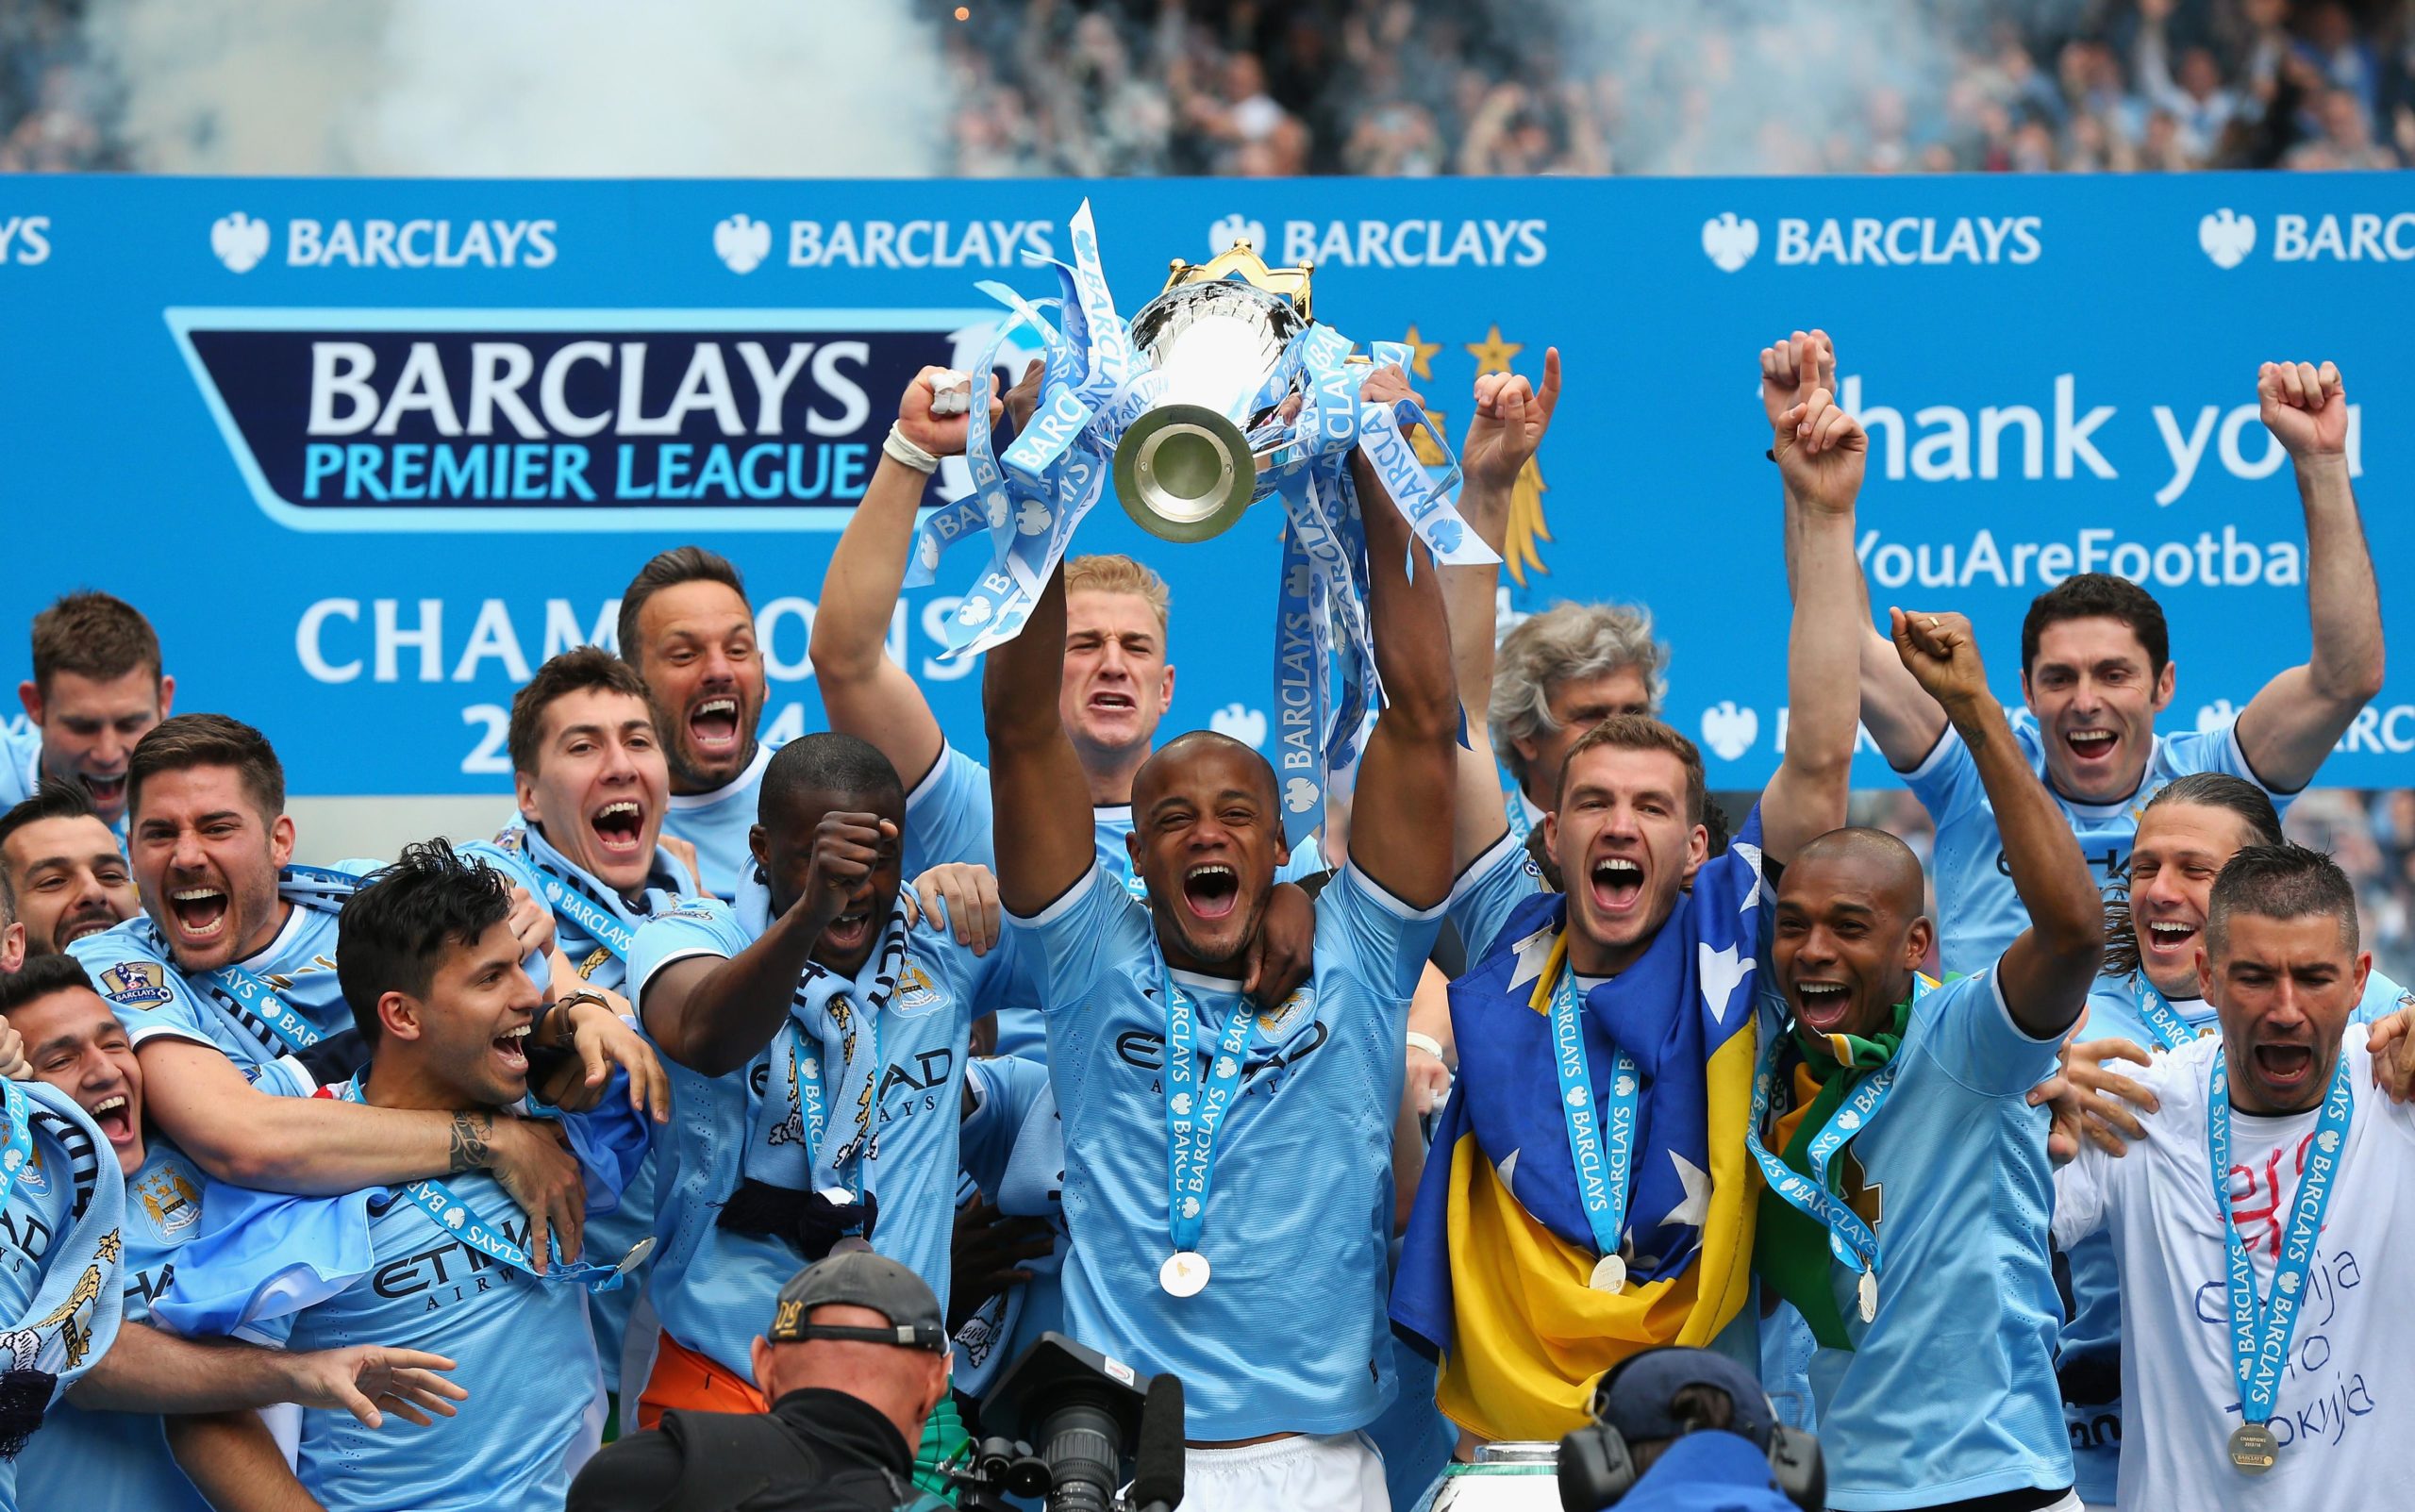 Manchester City are Premier League champions 2013-14